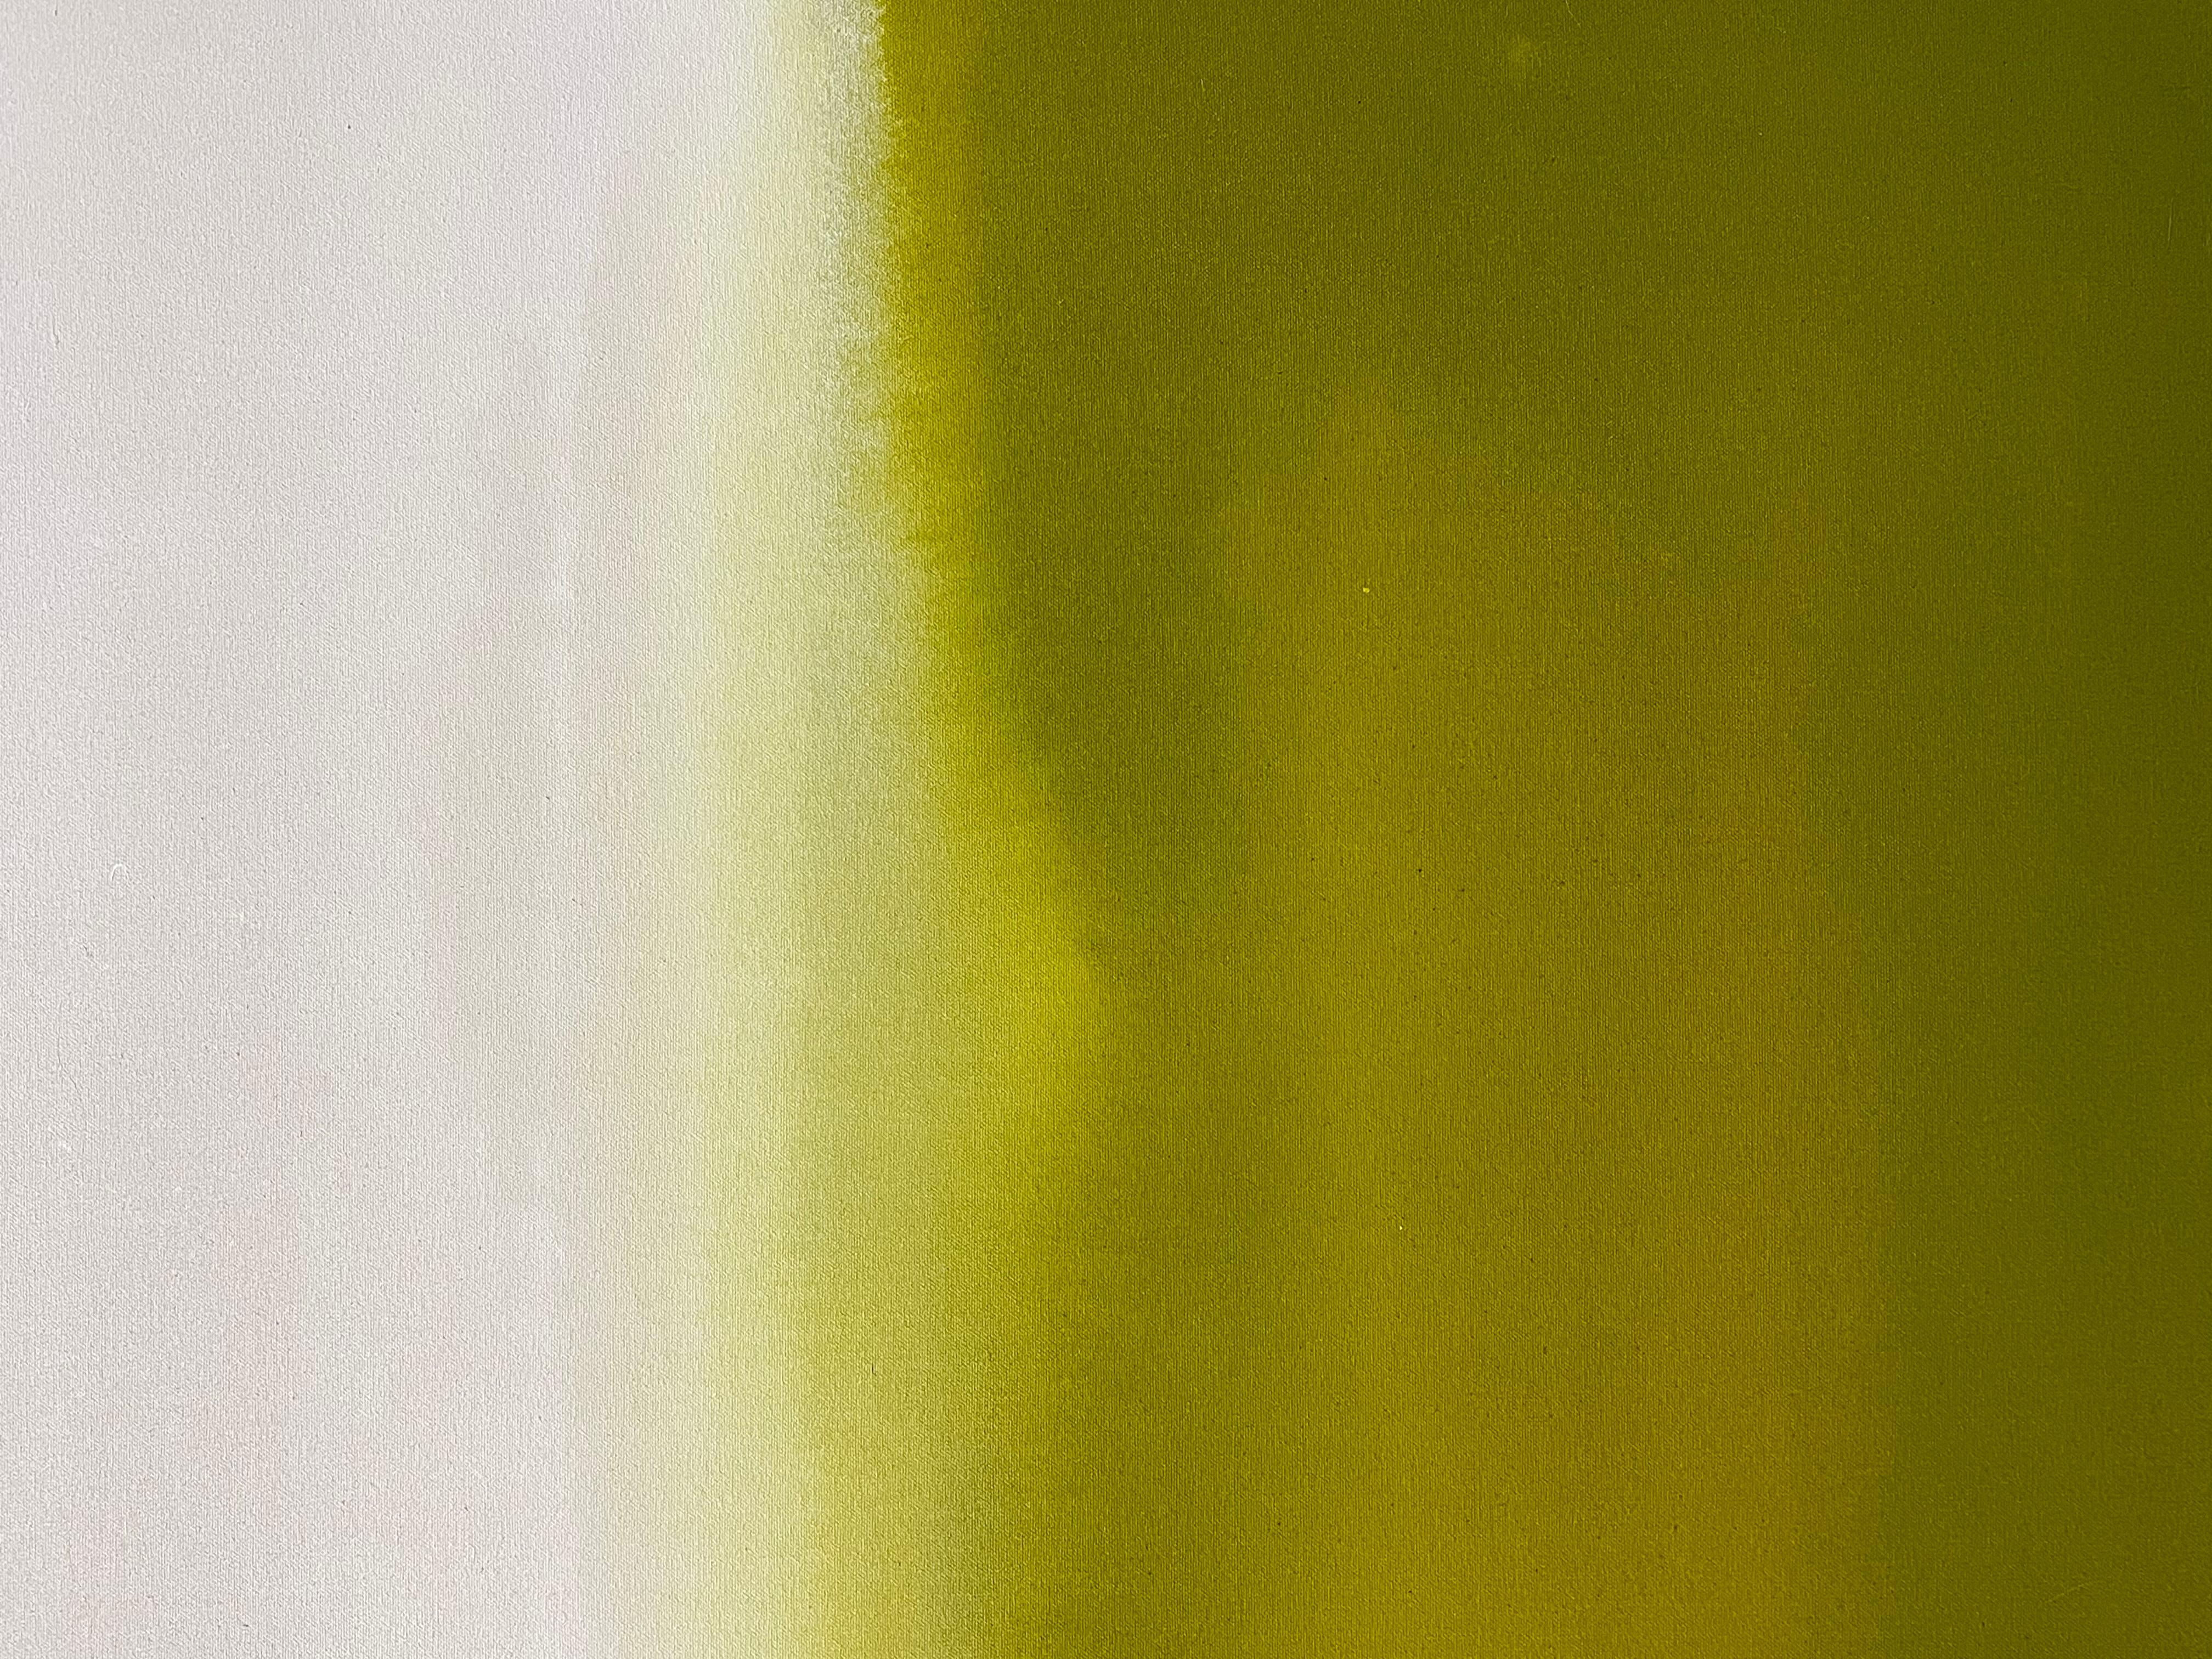 Grün, Weiß, Braun, Gebrannter Umbra, geometrische Abstraktion. Aquarellanwendung, abstrakte Acrylmalerei. Lime Green, Off White, Warm Brown.